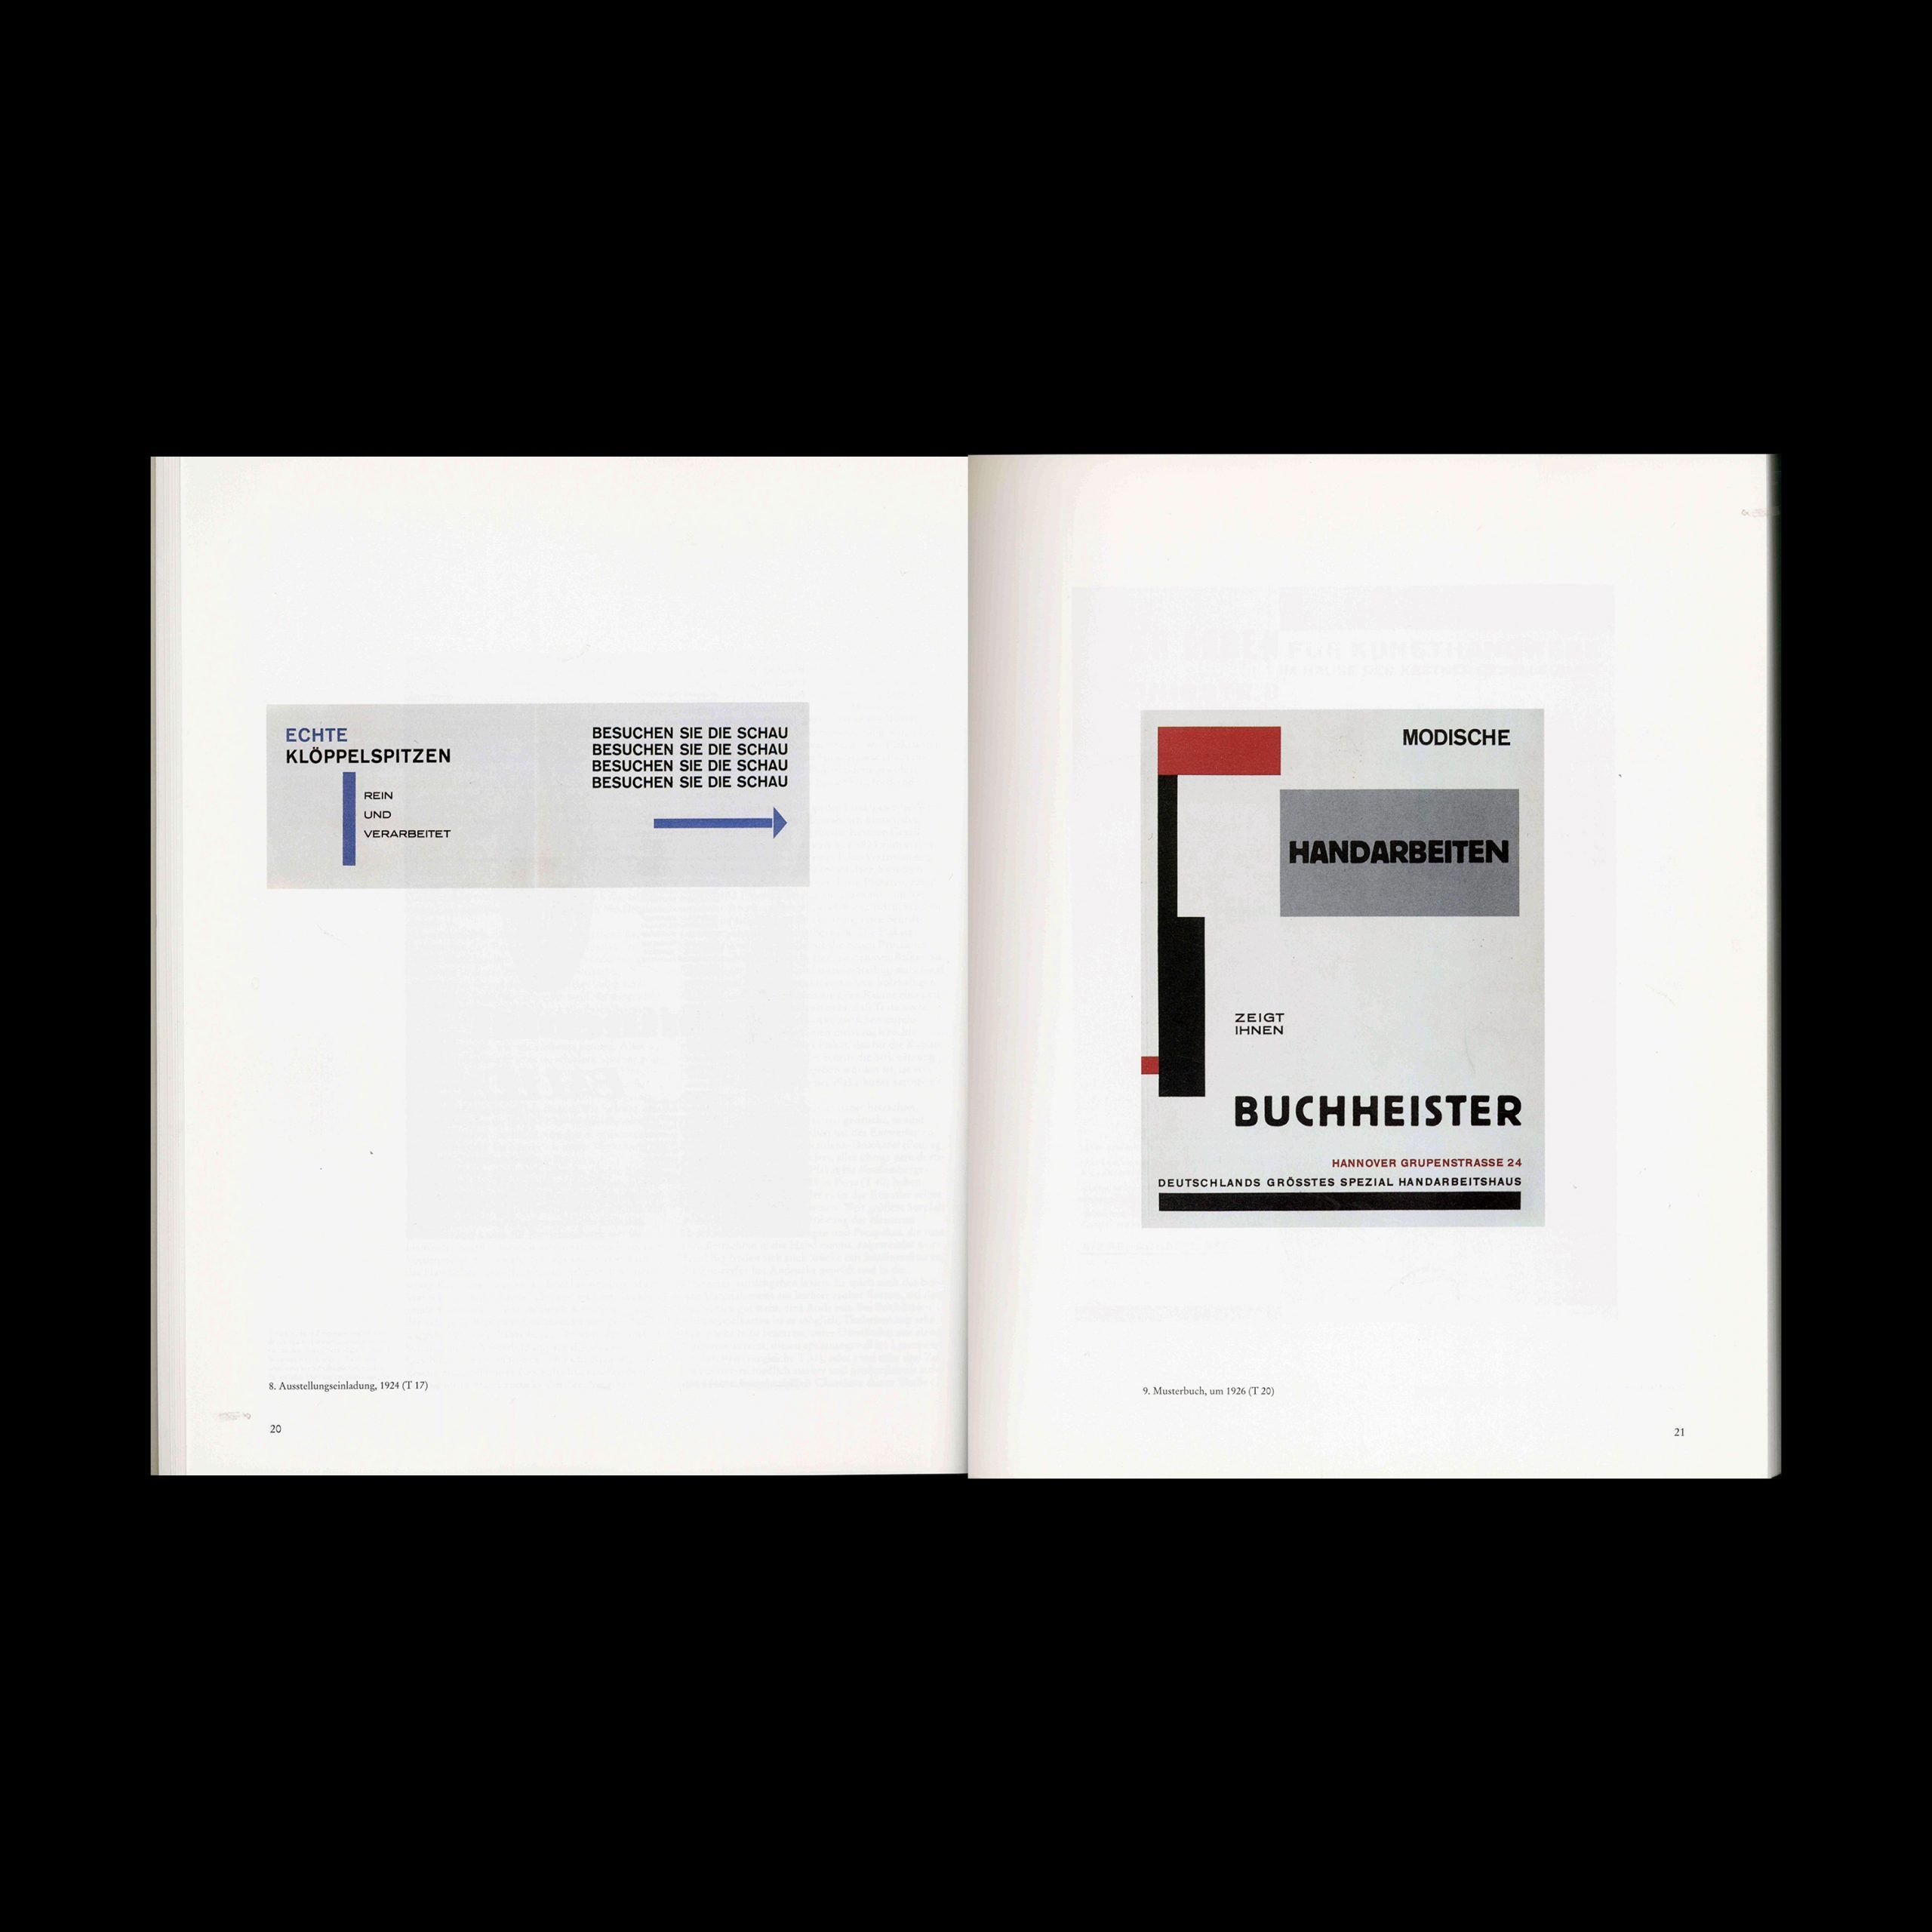 Friedrich Vordemberge-Gildewart Typographie und Werbegestaltung, 1990 